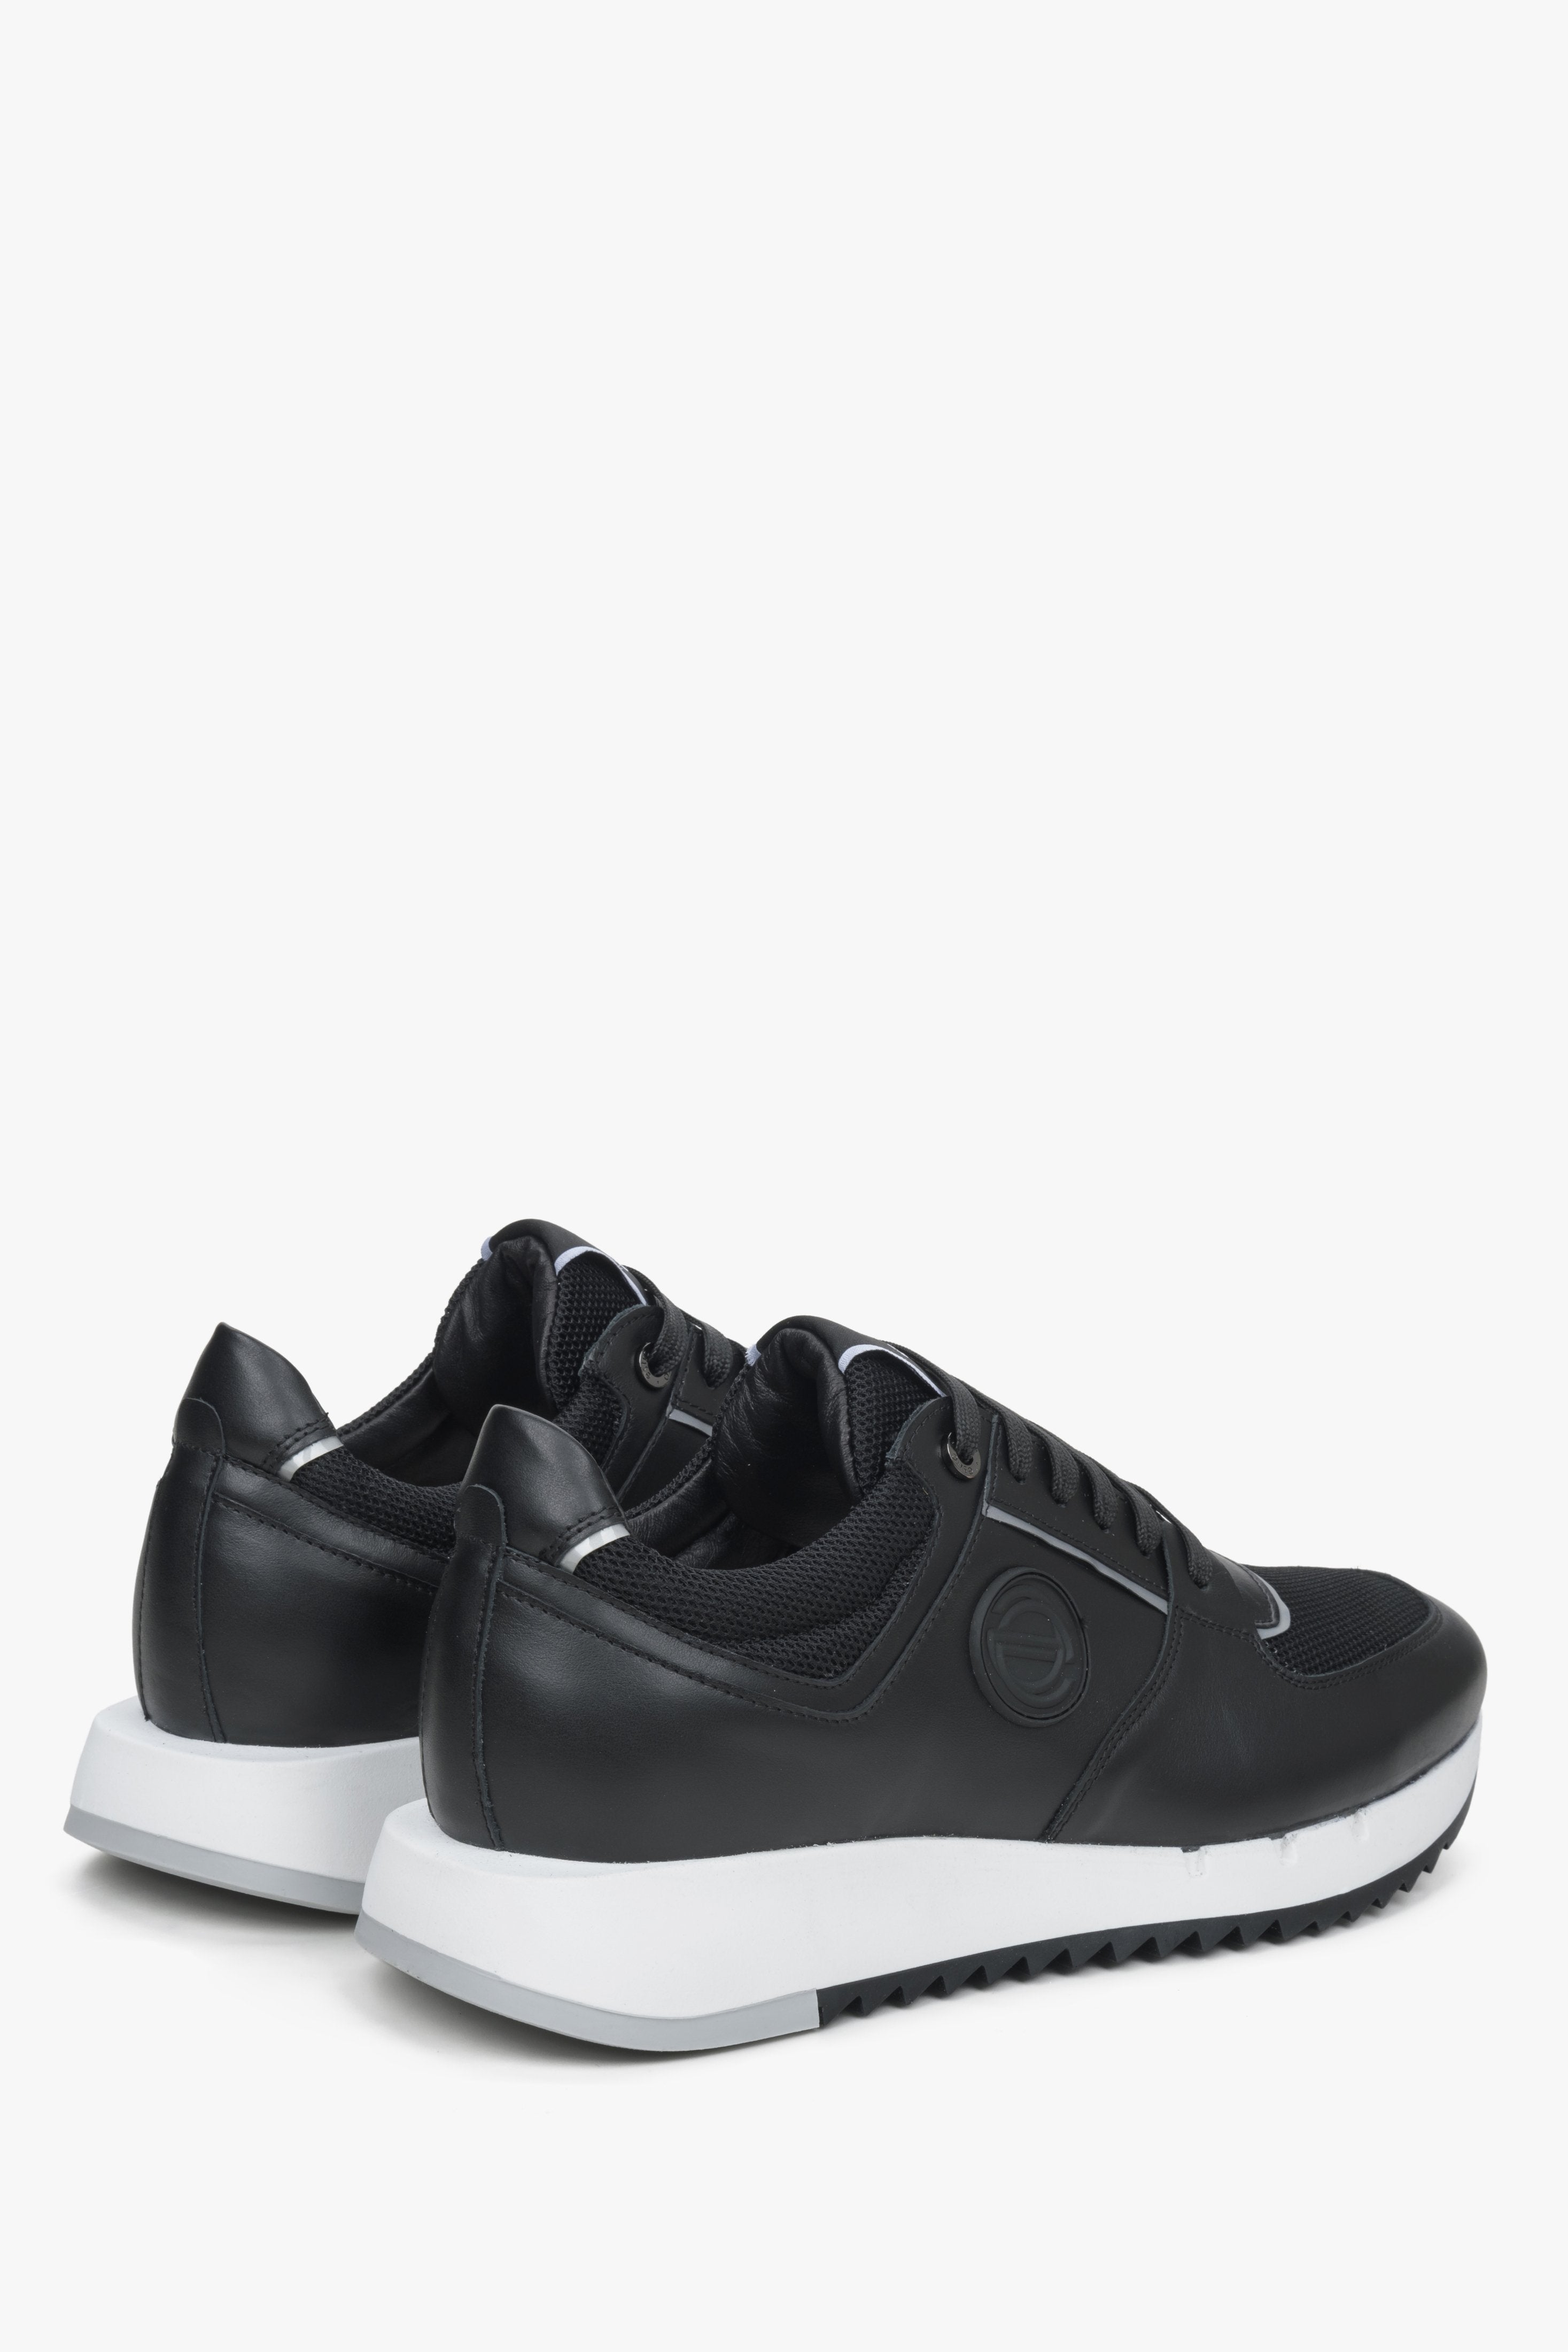 Czarne skórzane sneakersy męskie Estro - zbliżenie na zapiętek i linię boczną buytów.